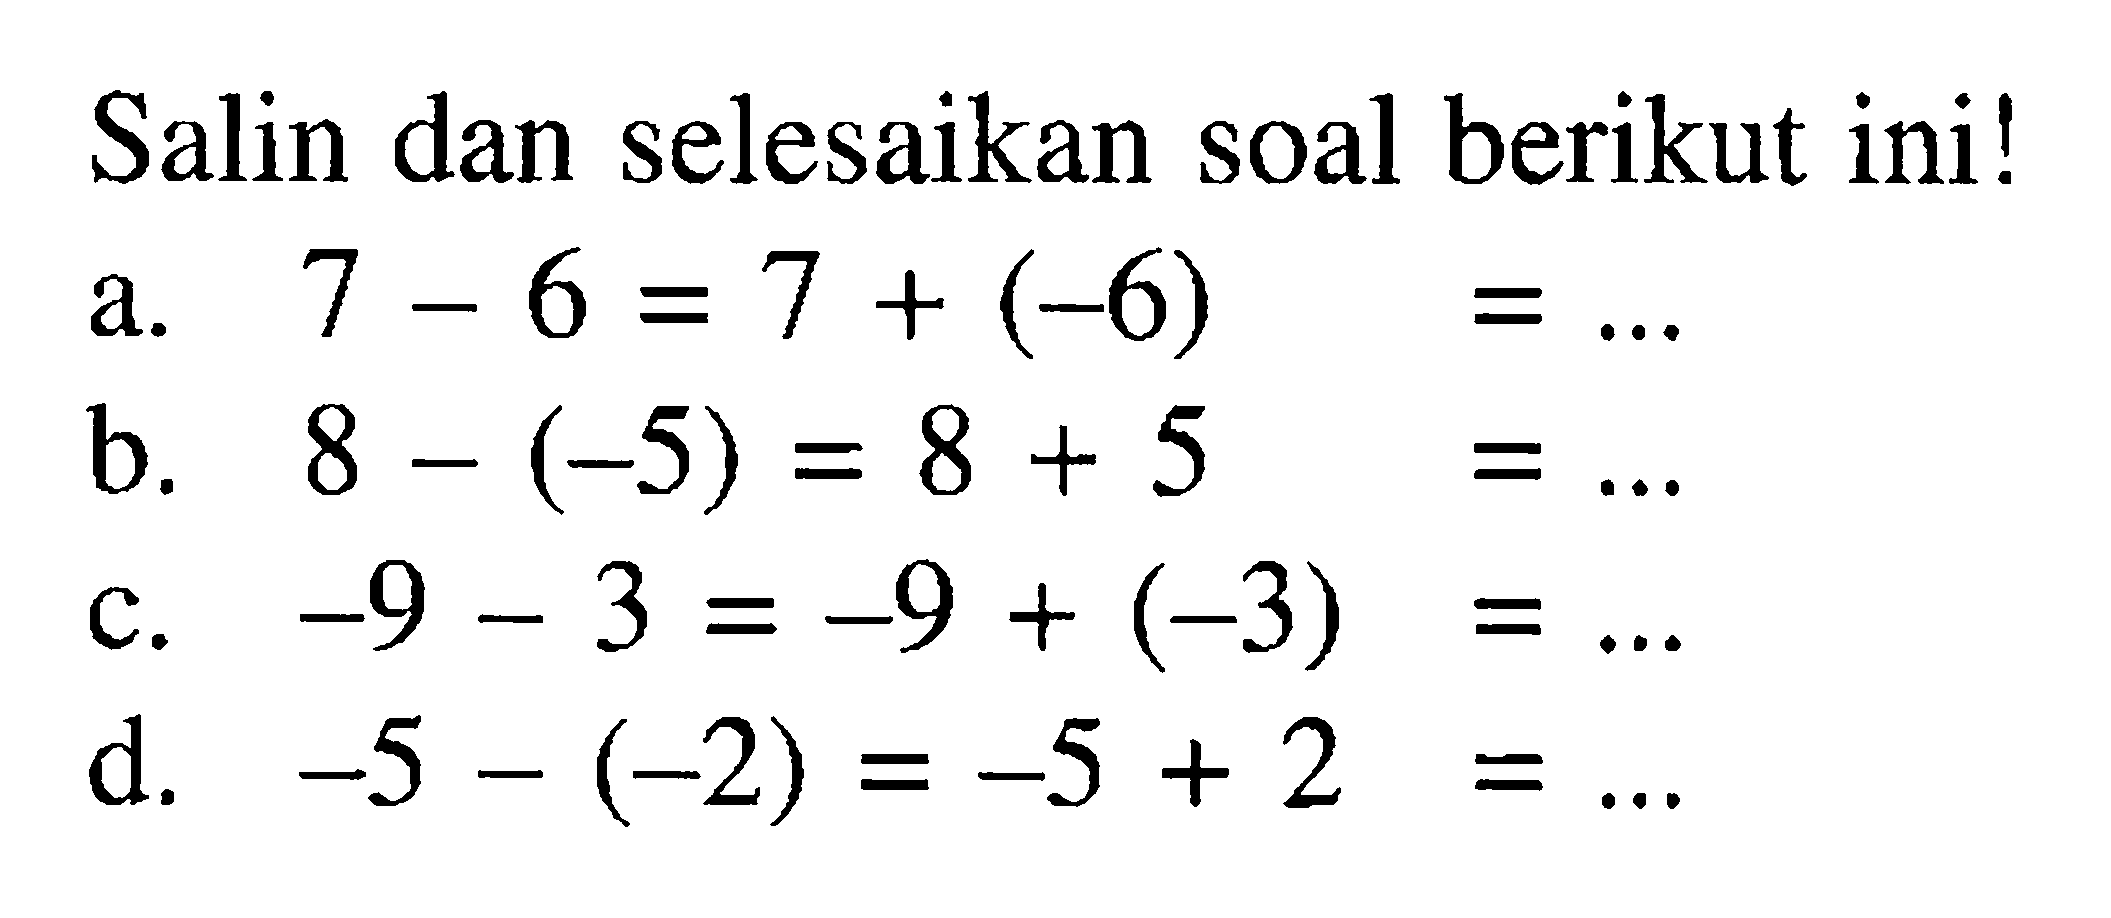 Salin dan selesaikan soal berikut ini! a. 7- 6 = 7 + (-6) = b. 8 - (- 5) = 8 + 5 = c. -9 -3 = -9 + (-3)= d. -5 -(-2) = -5 + 2=